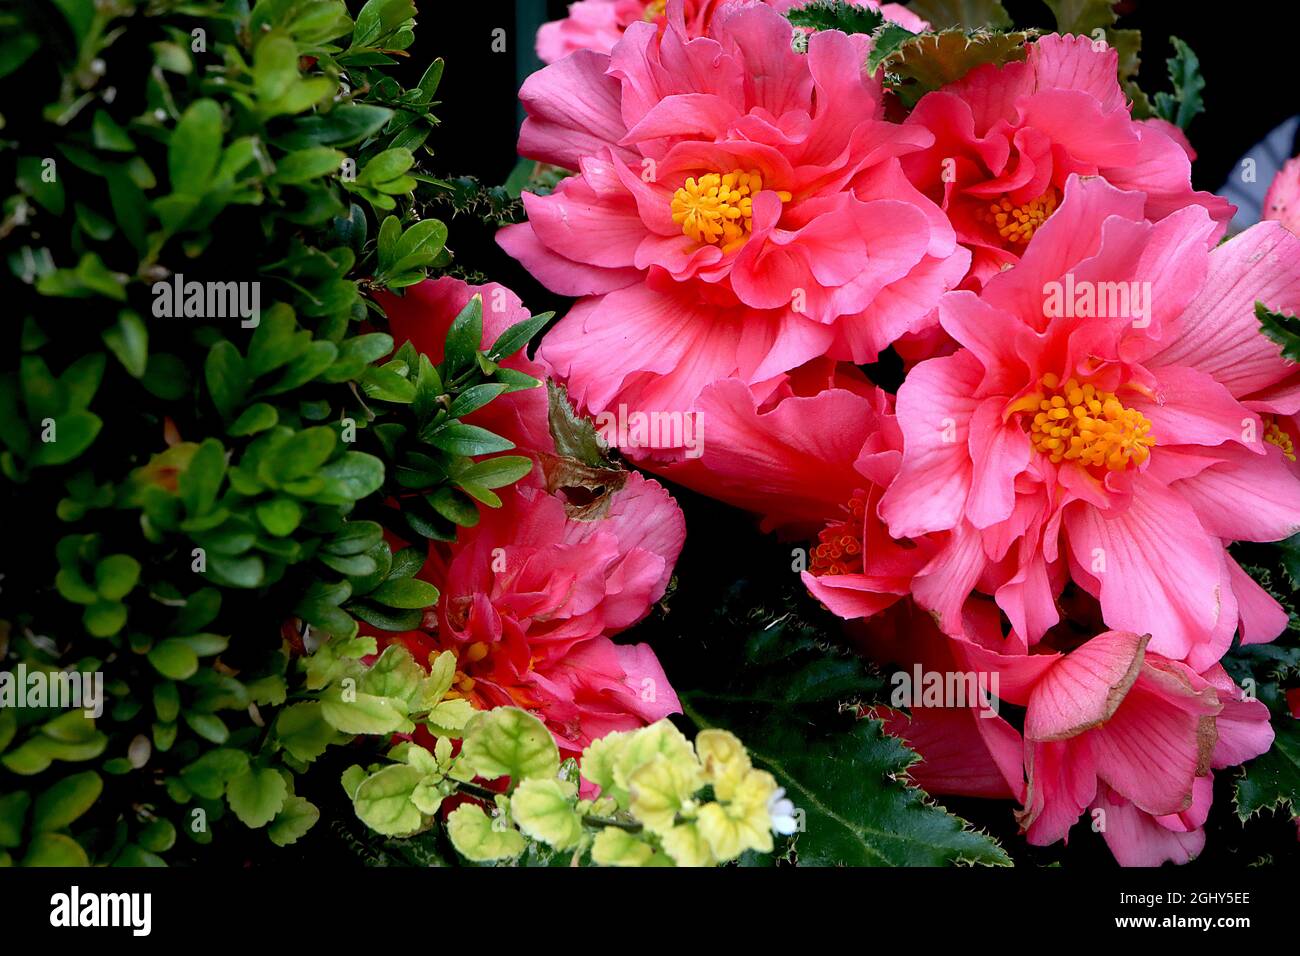 Begonia tuberosa «rose non stop» double fleurs roses moyennes et feuilles vert foncé en forme d'ange à nervures vertes, août, Angleterre, Royaume-Uni Banque D'Images